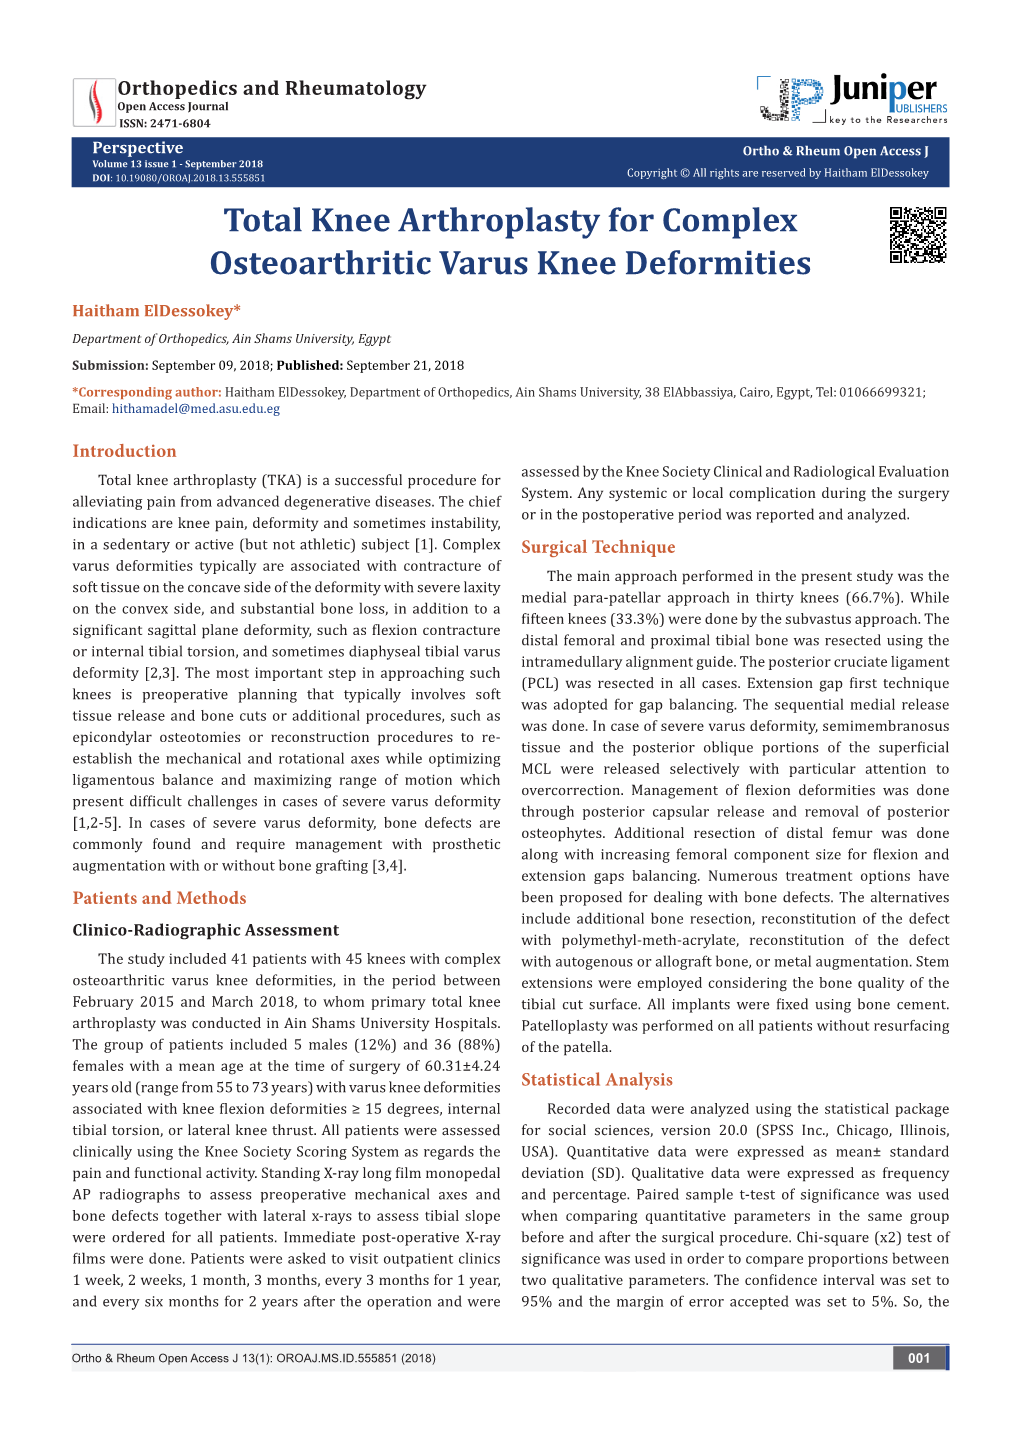 Total Knee Arthroplasty for Complex Osteoarthritic Varus Knee Deformities